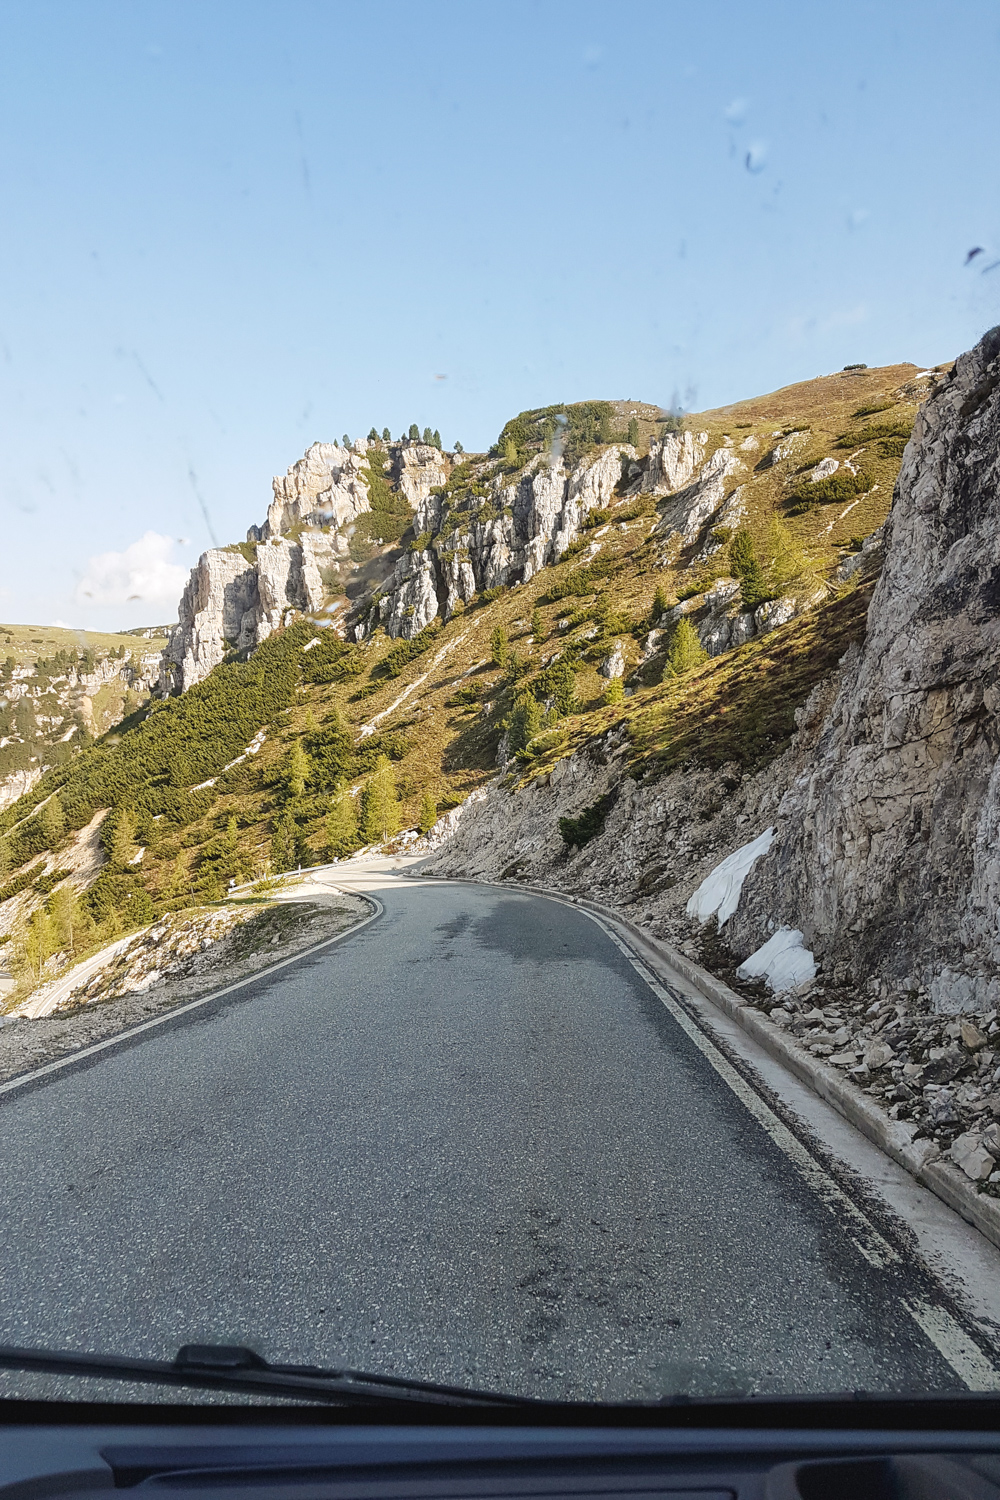 The Road to the Tre Cime di Lavaredo